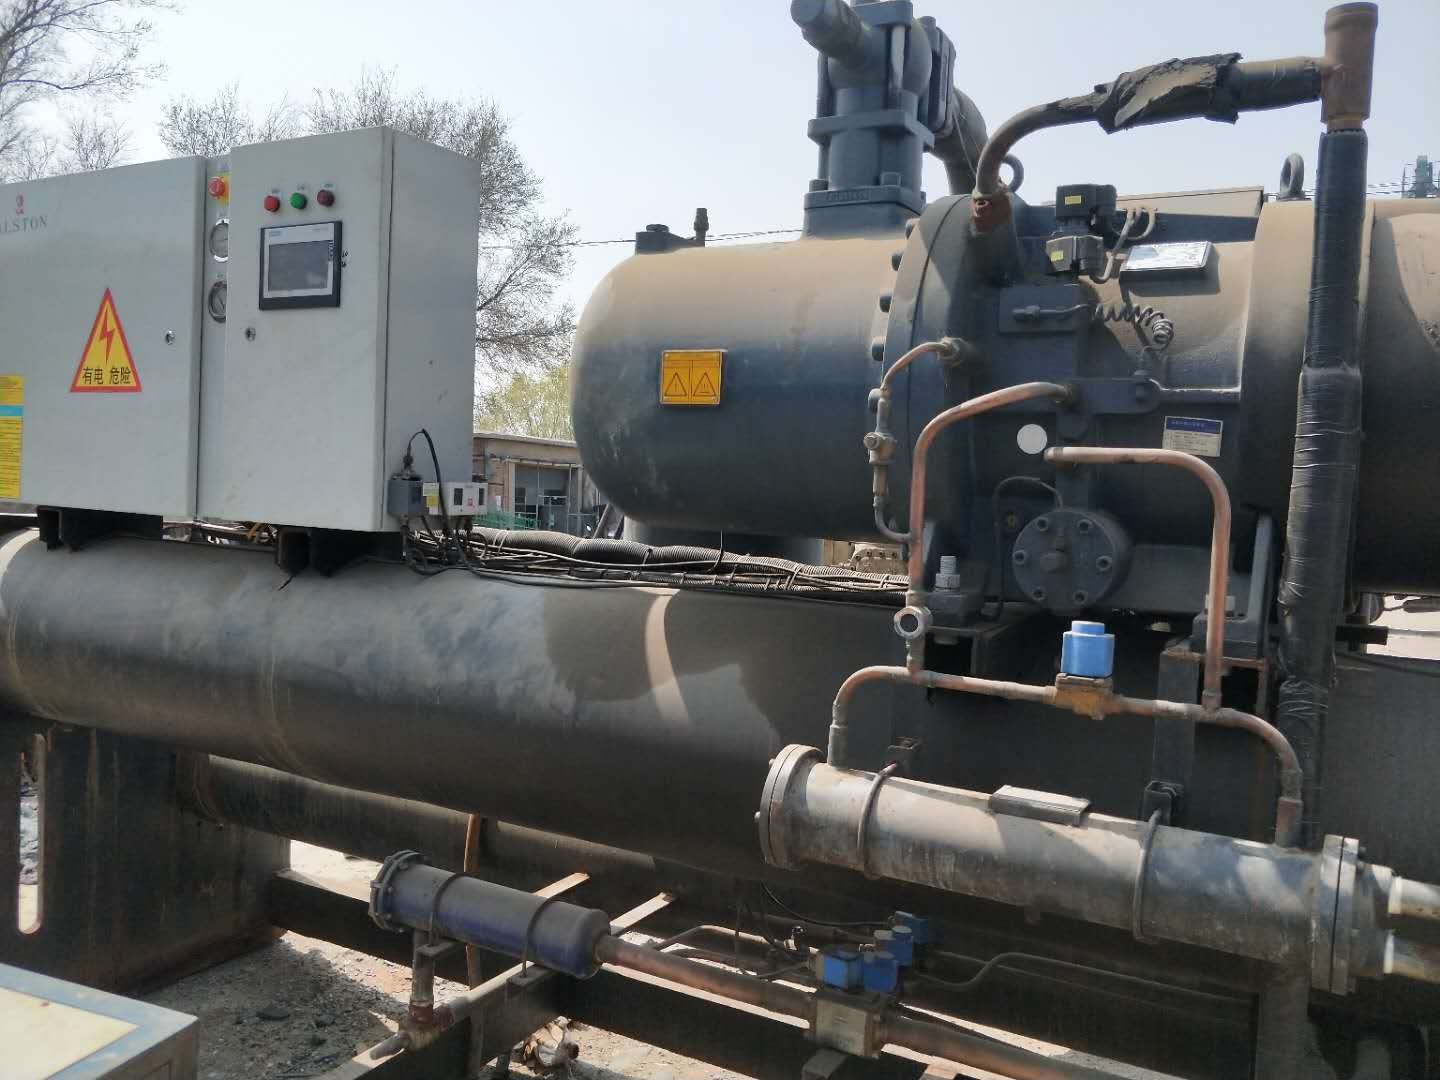 深圳市旧空调回收 深圳市冷水机组回收公司